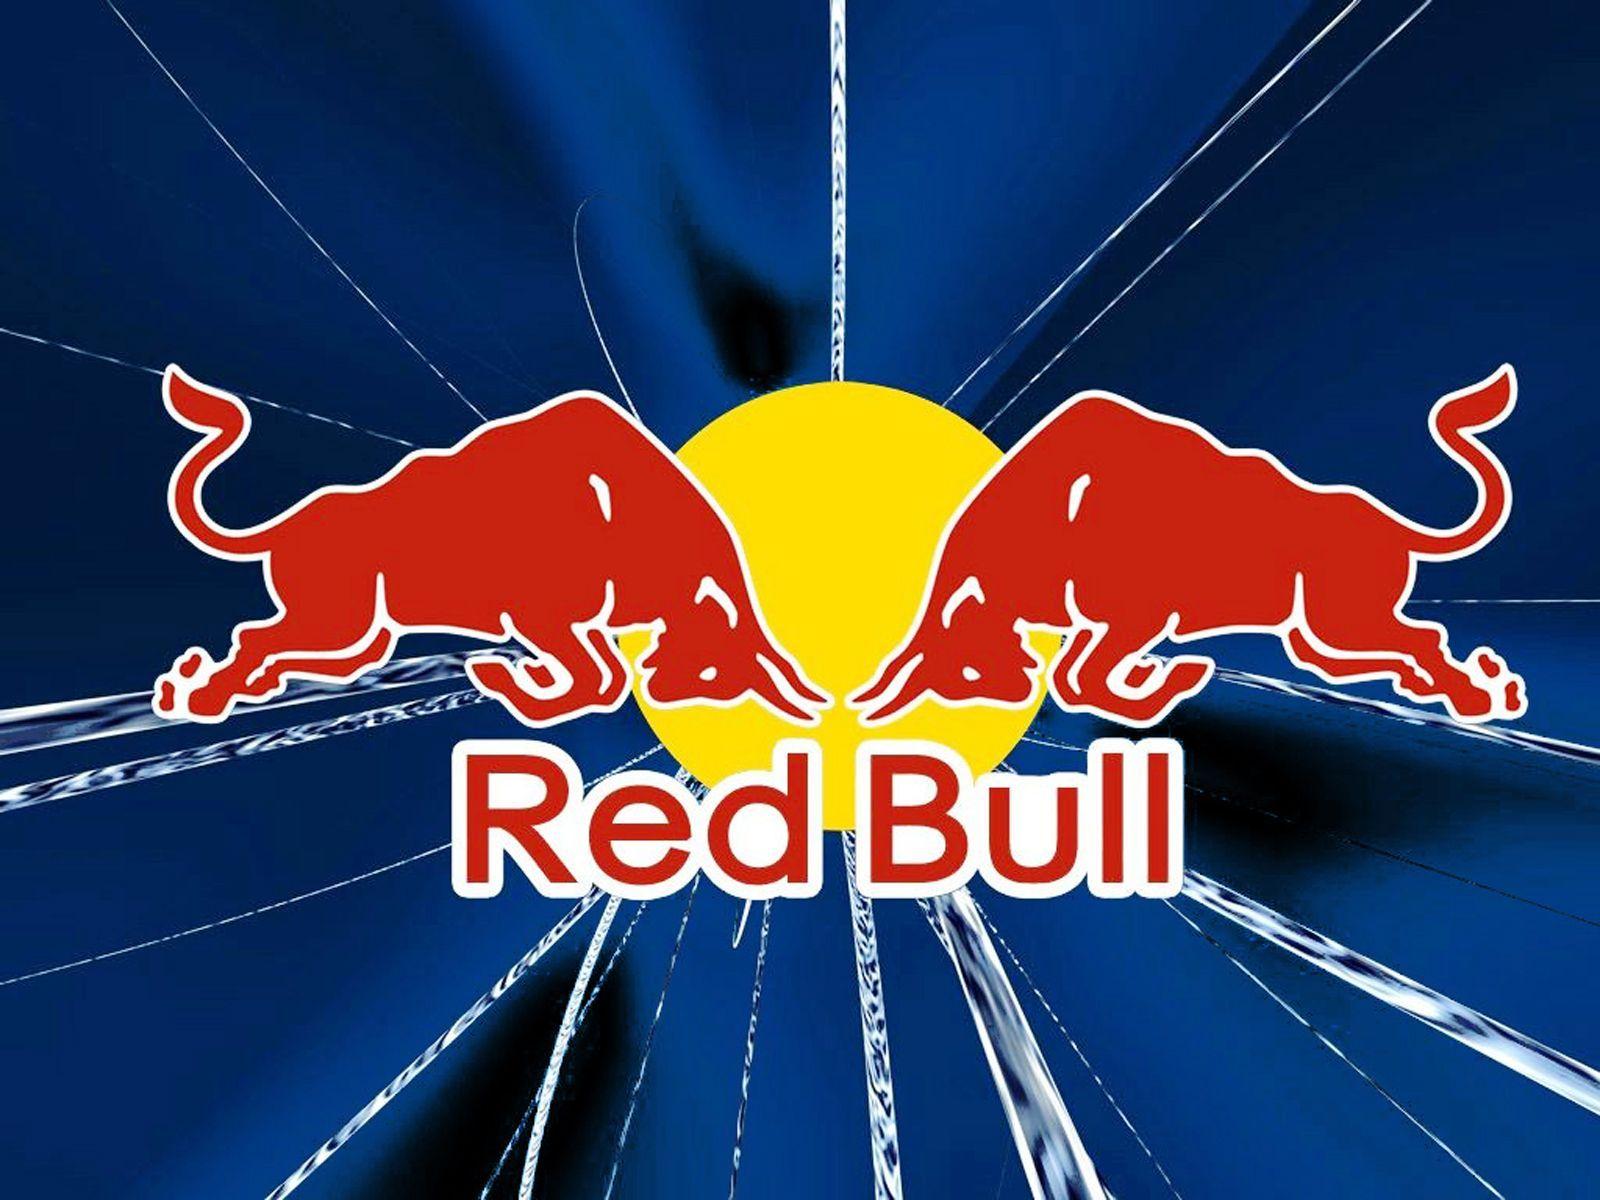 Cool Red Bull Logo - Best Free Red Bull Wallpaper